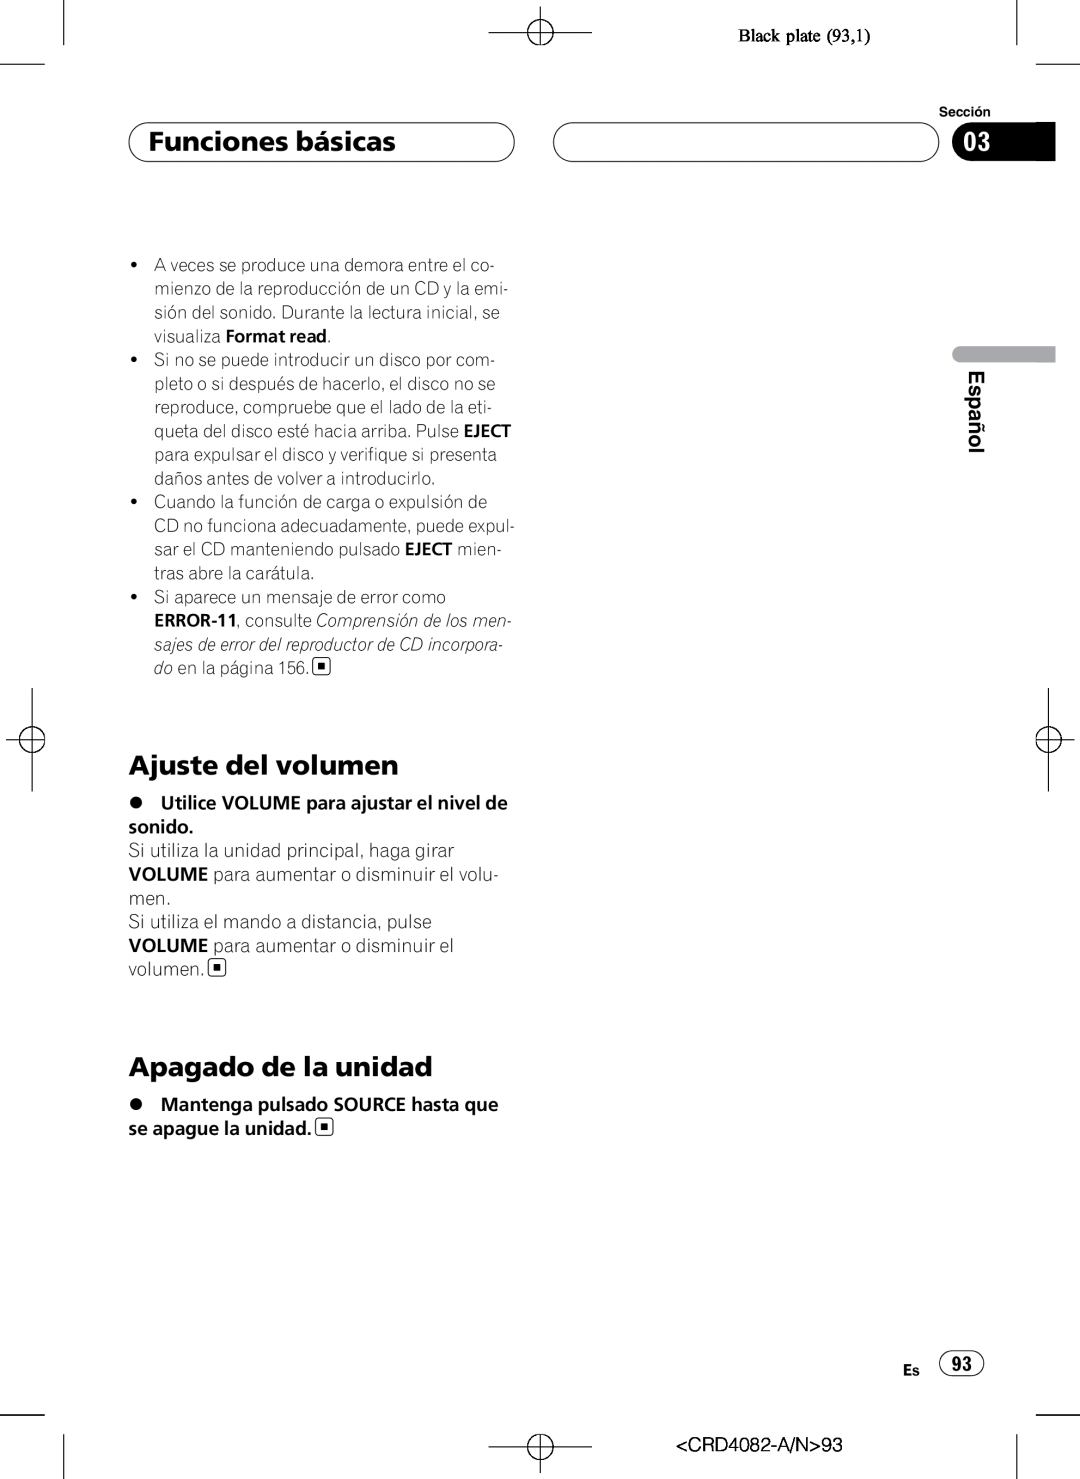 Pioneer DEH-P80RS operation manual Funciones básicas, Ajuste del volumen, Apagado de la unidad, Black plate 93,1, Español 